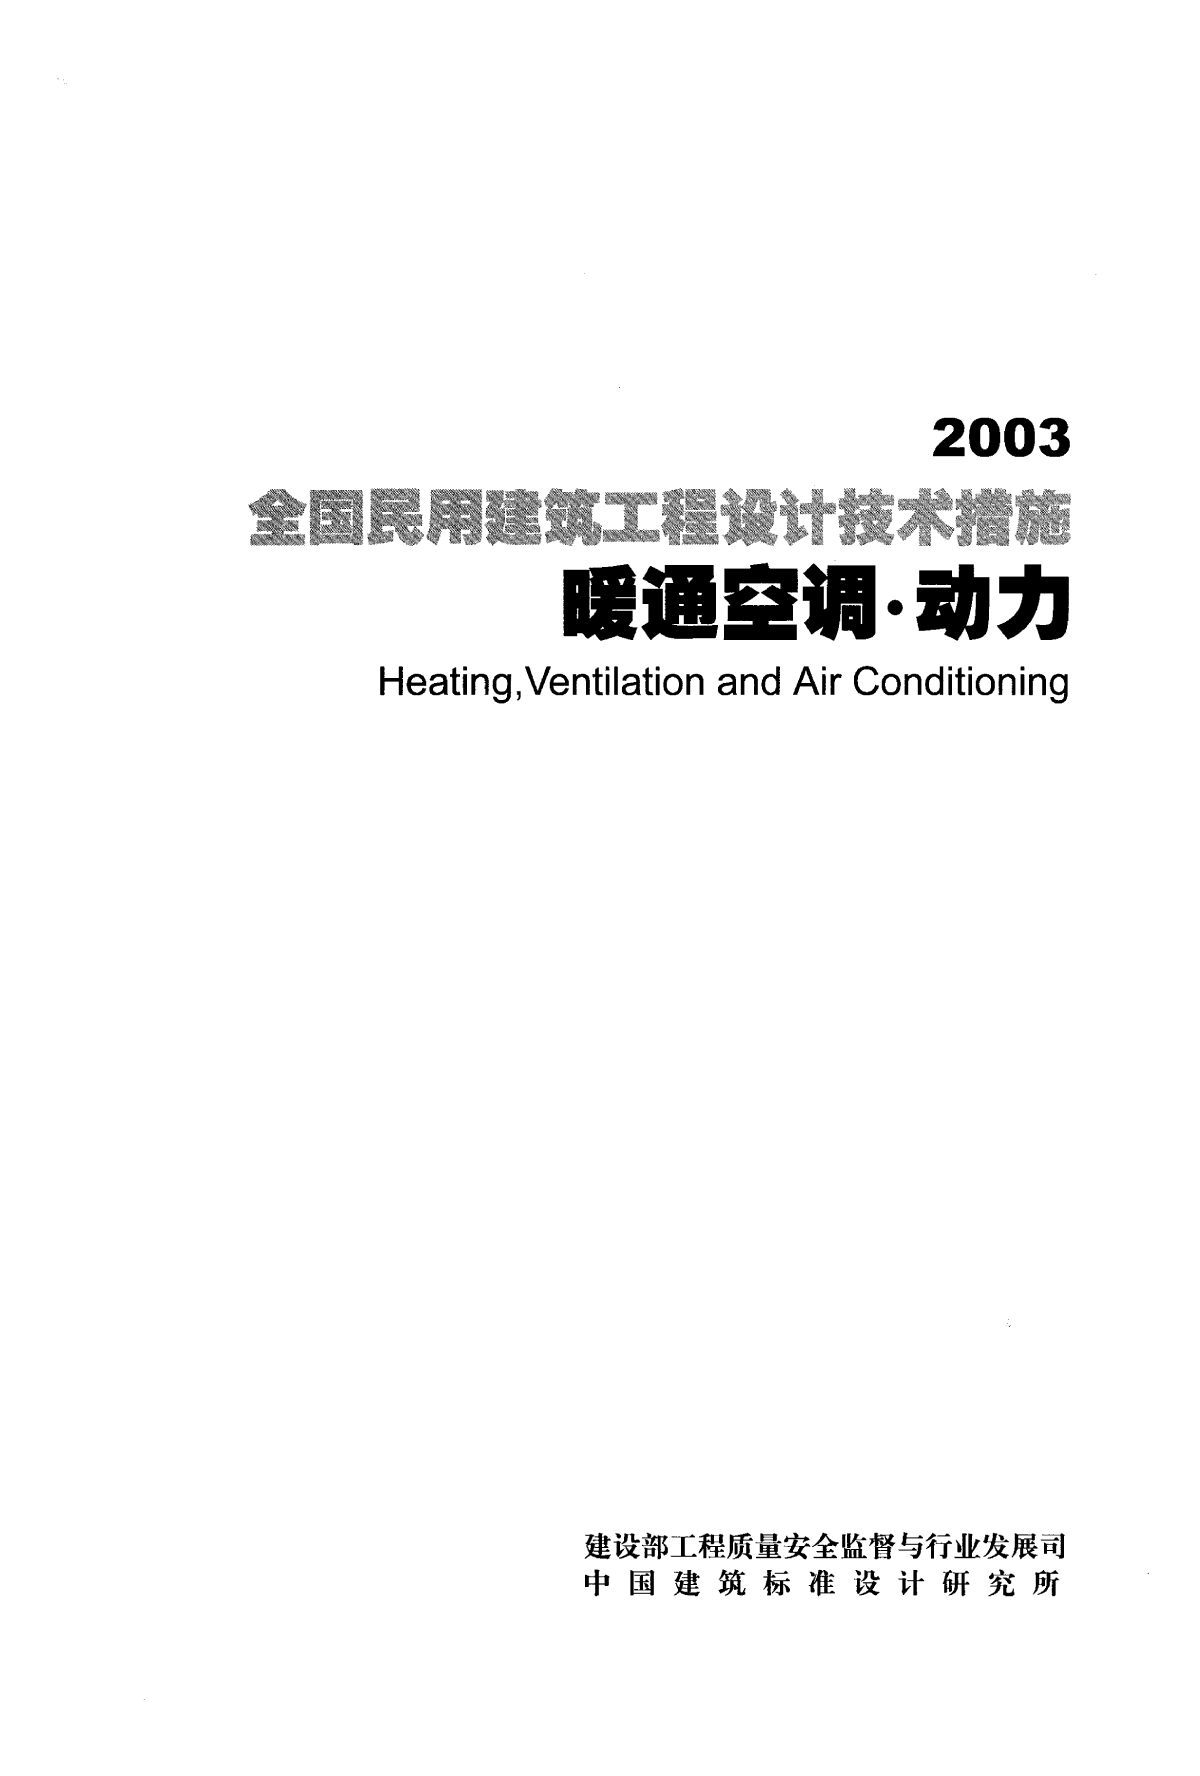 全国民用建筑工程设计技术措施-暖通空调-动力-2003-图一